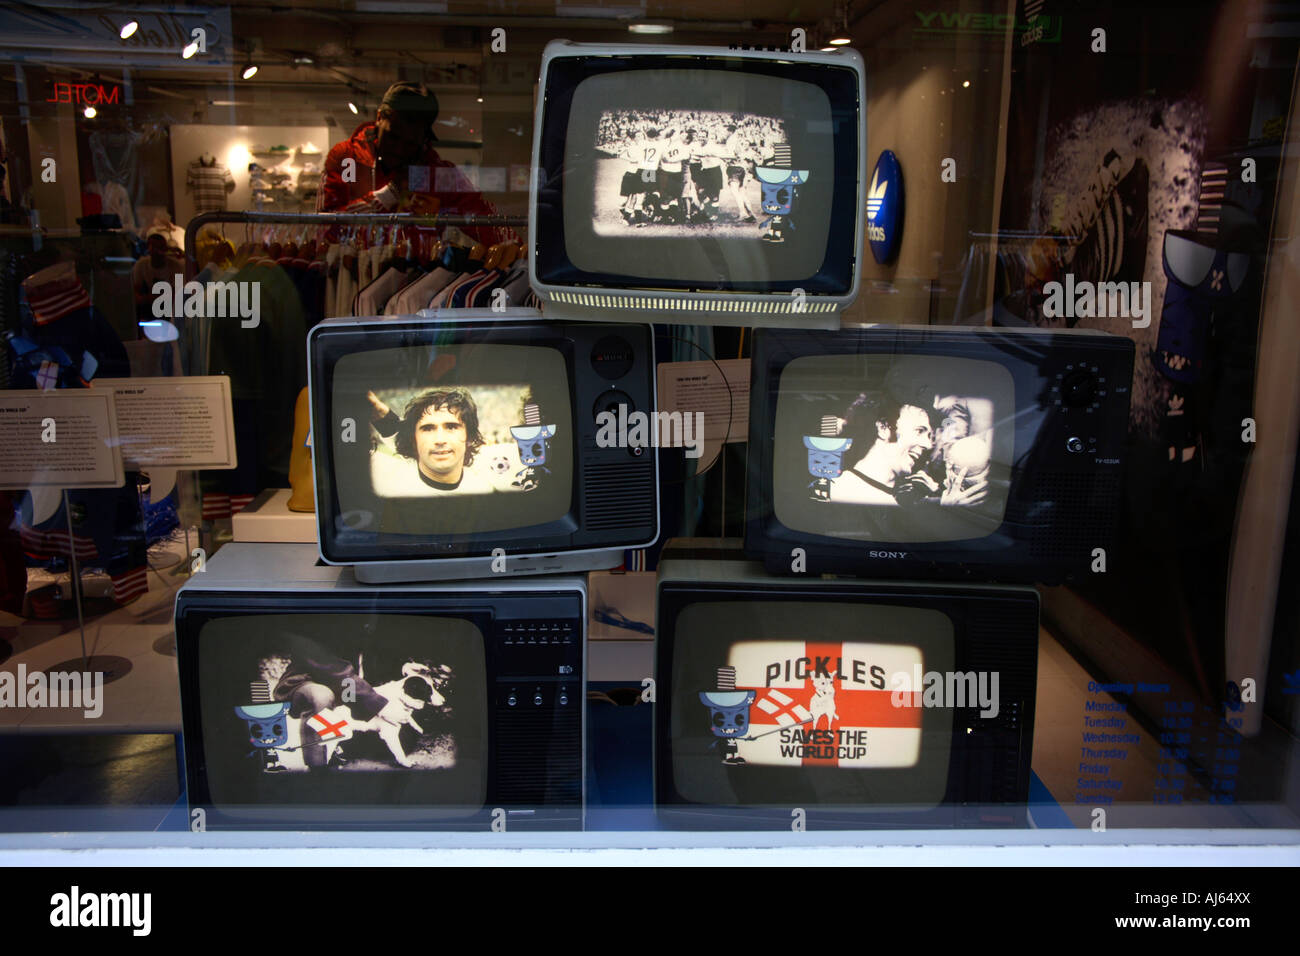 Les écrans de télévision à l'intérieur du magasin Adidas, Covent Garden, Londres, finales de la Coupe du Monde 2006 Banque D'Images